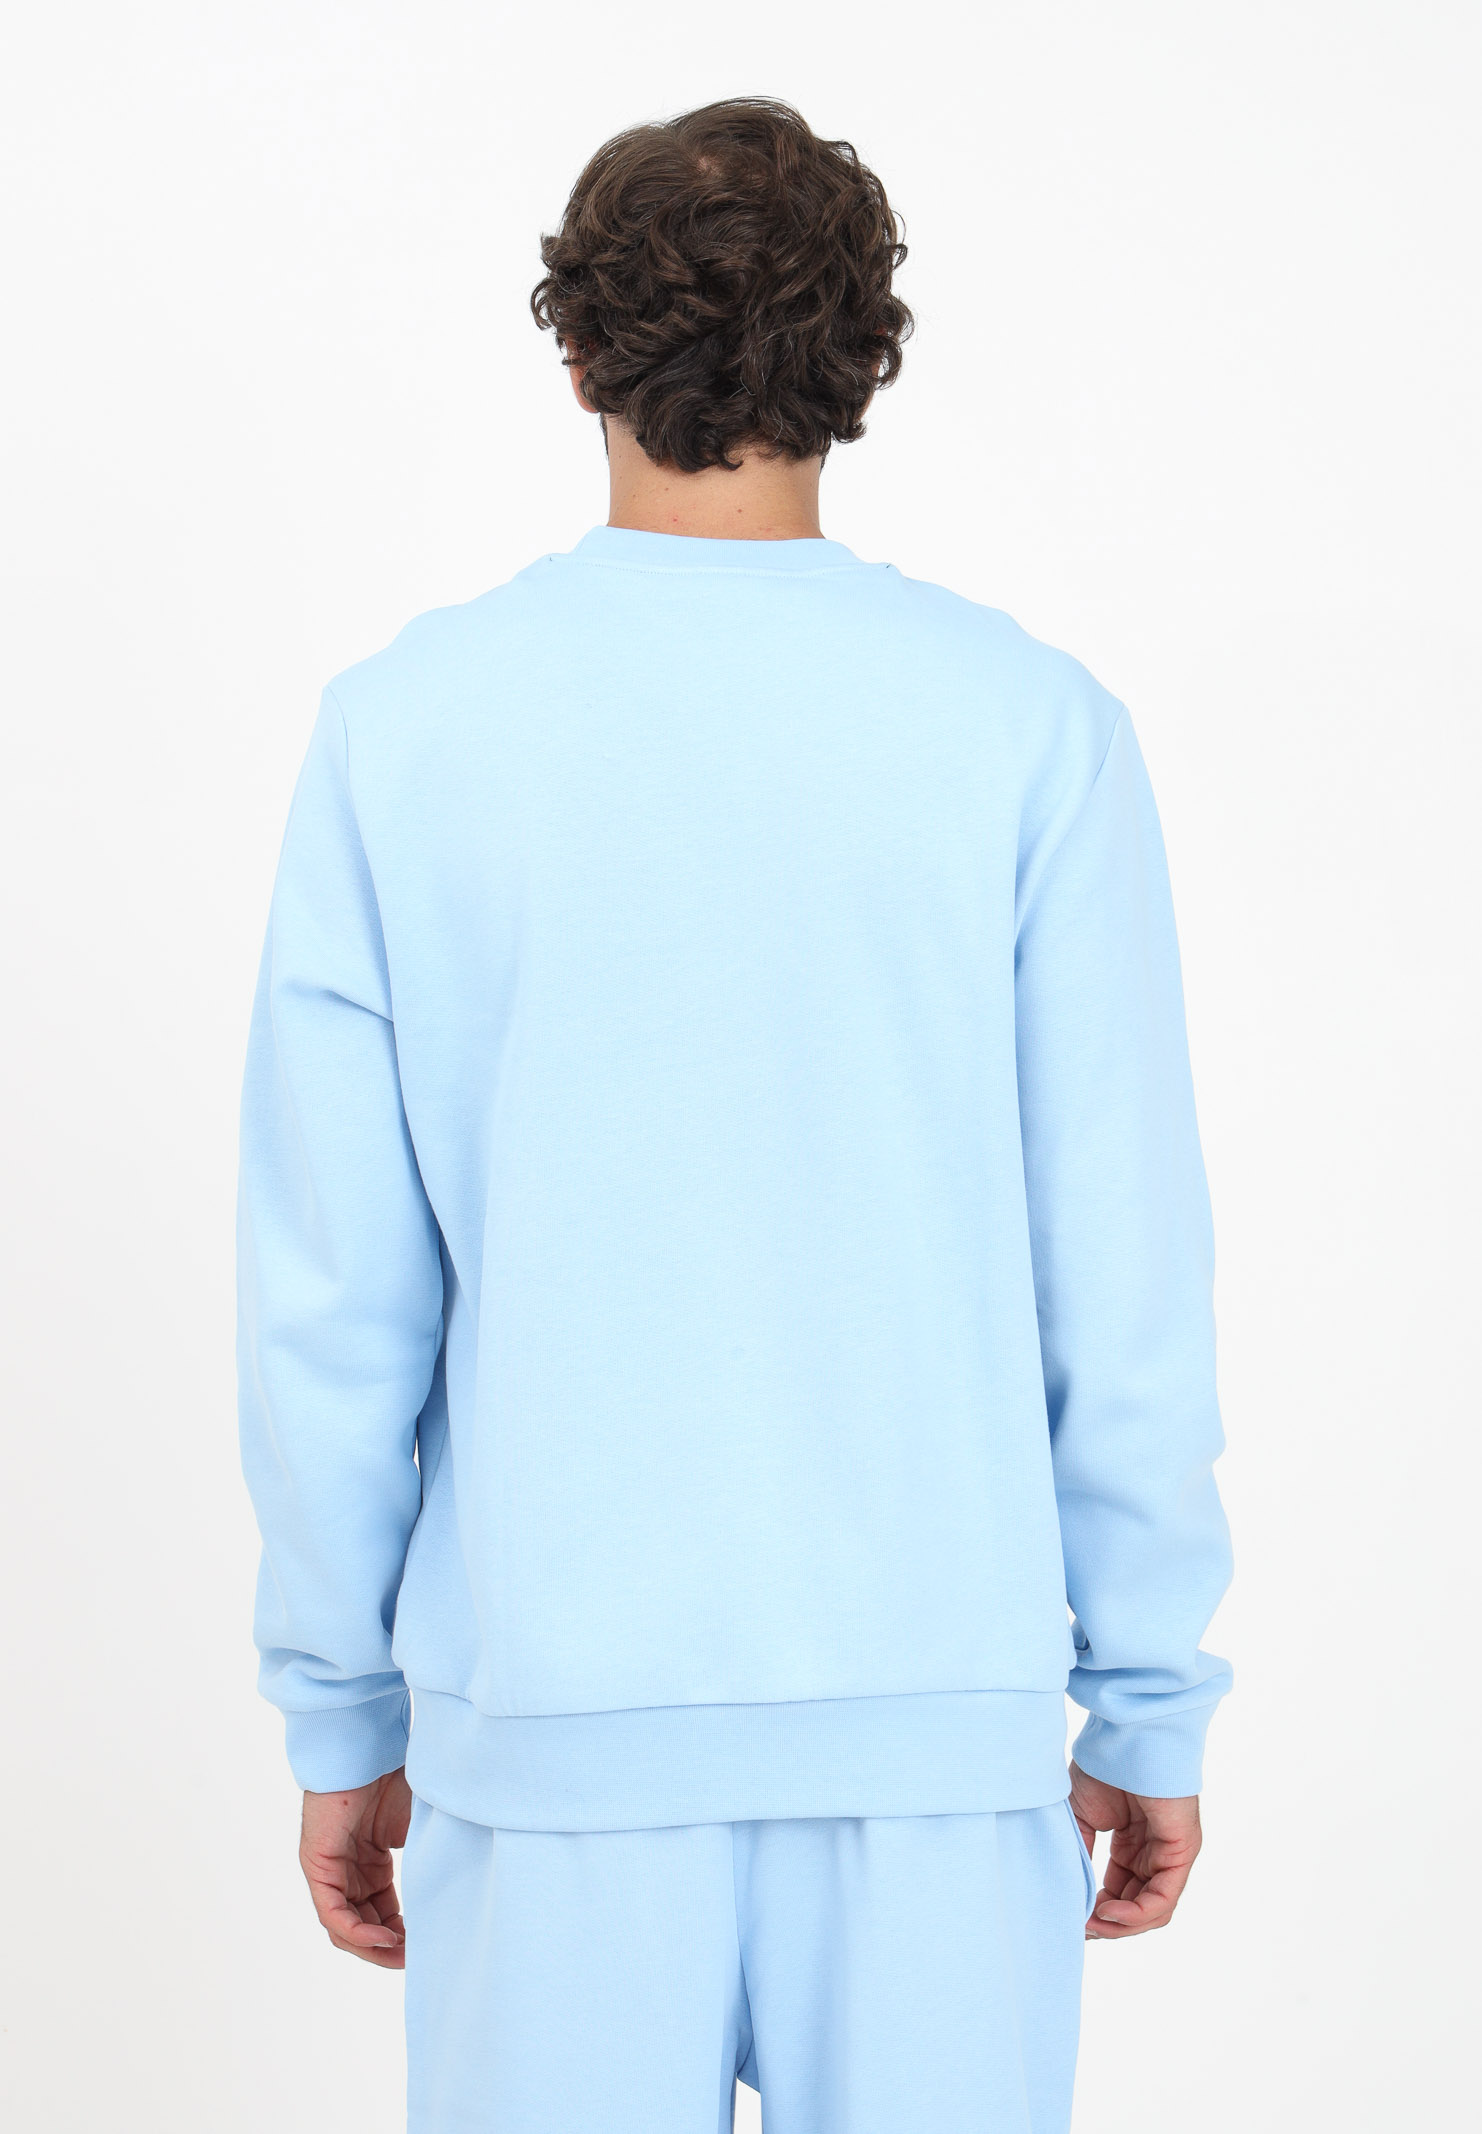 Light blue crew neck sweatshirt for men LACOSTE | SH9608HBP